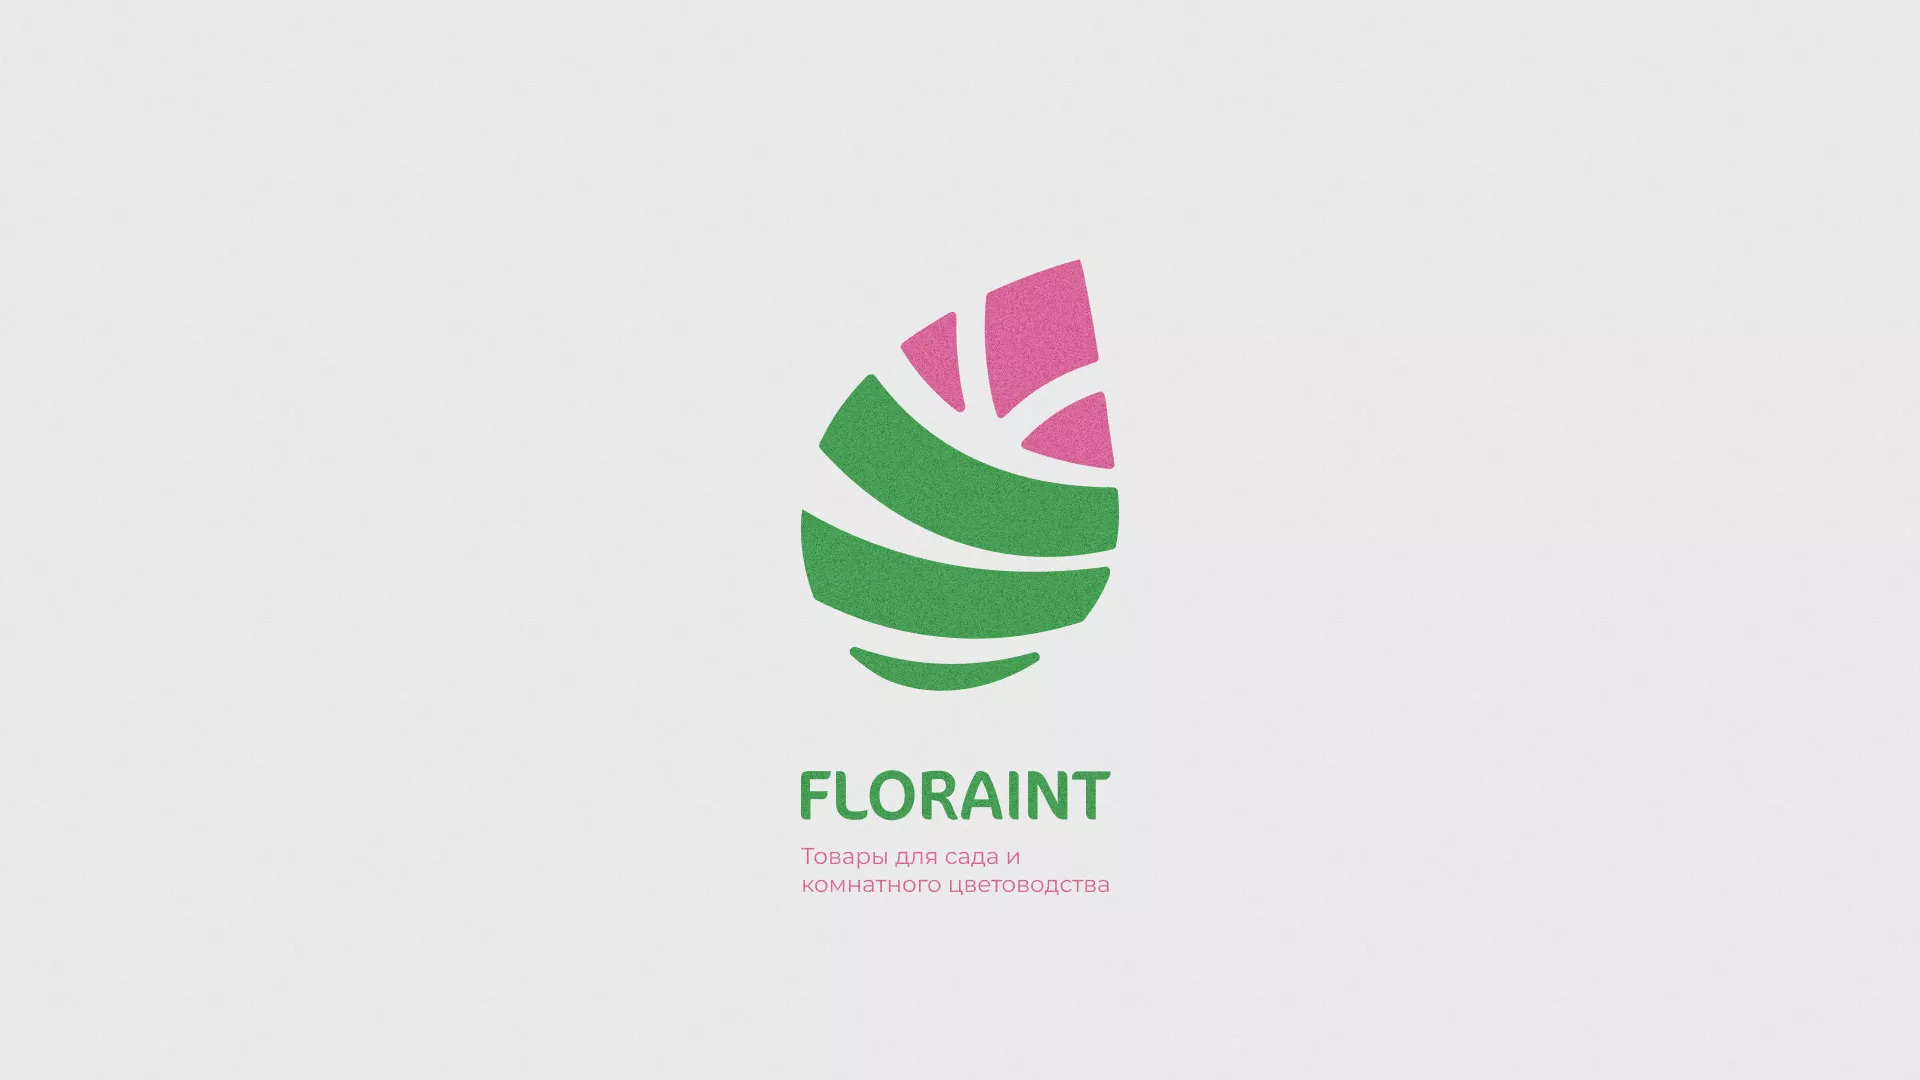 Разработка оформления профиля Instagram для магазина «Floraint» в Одинцово